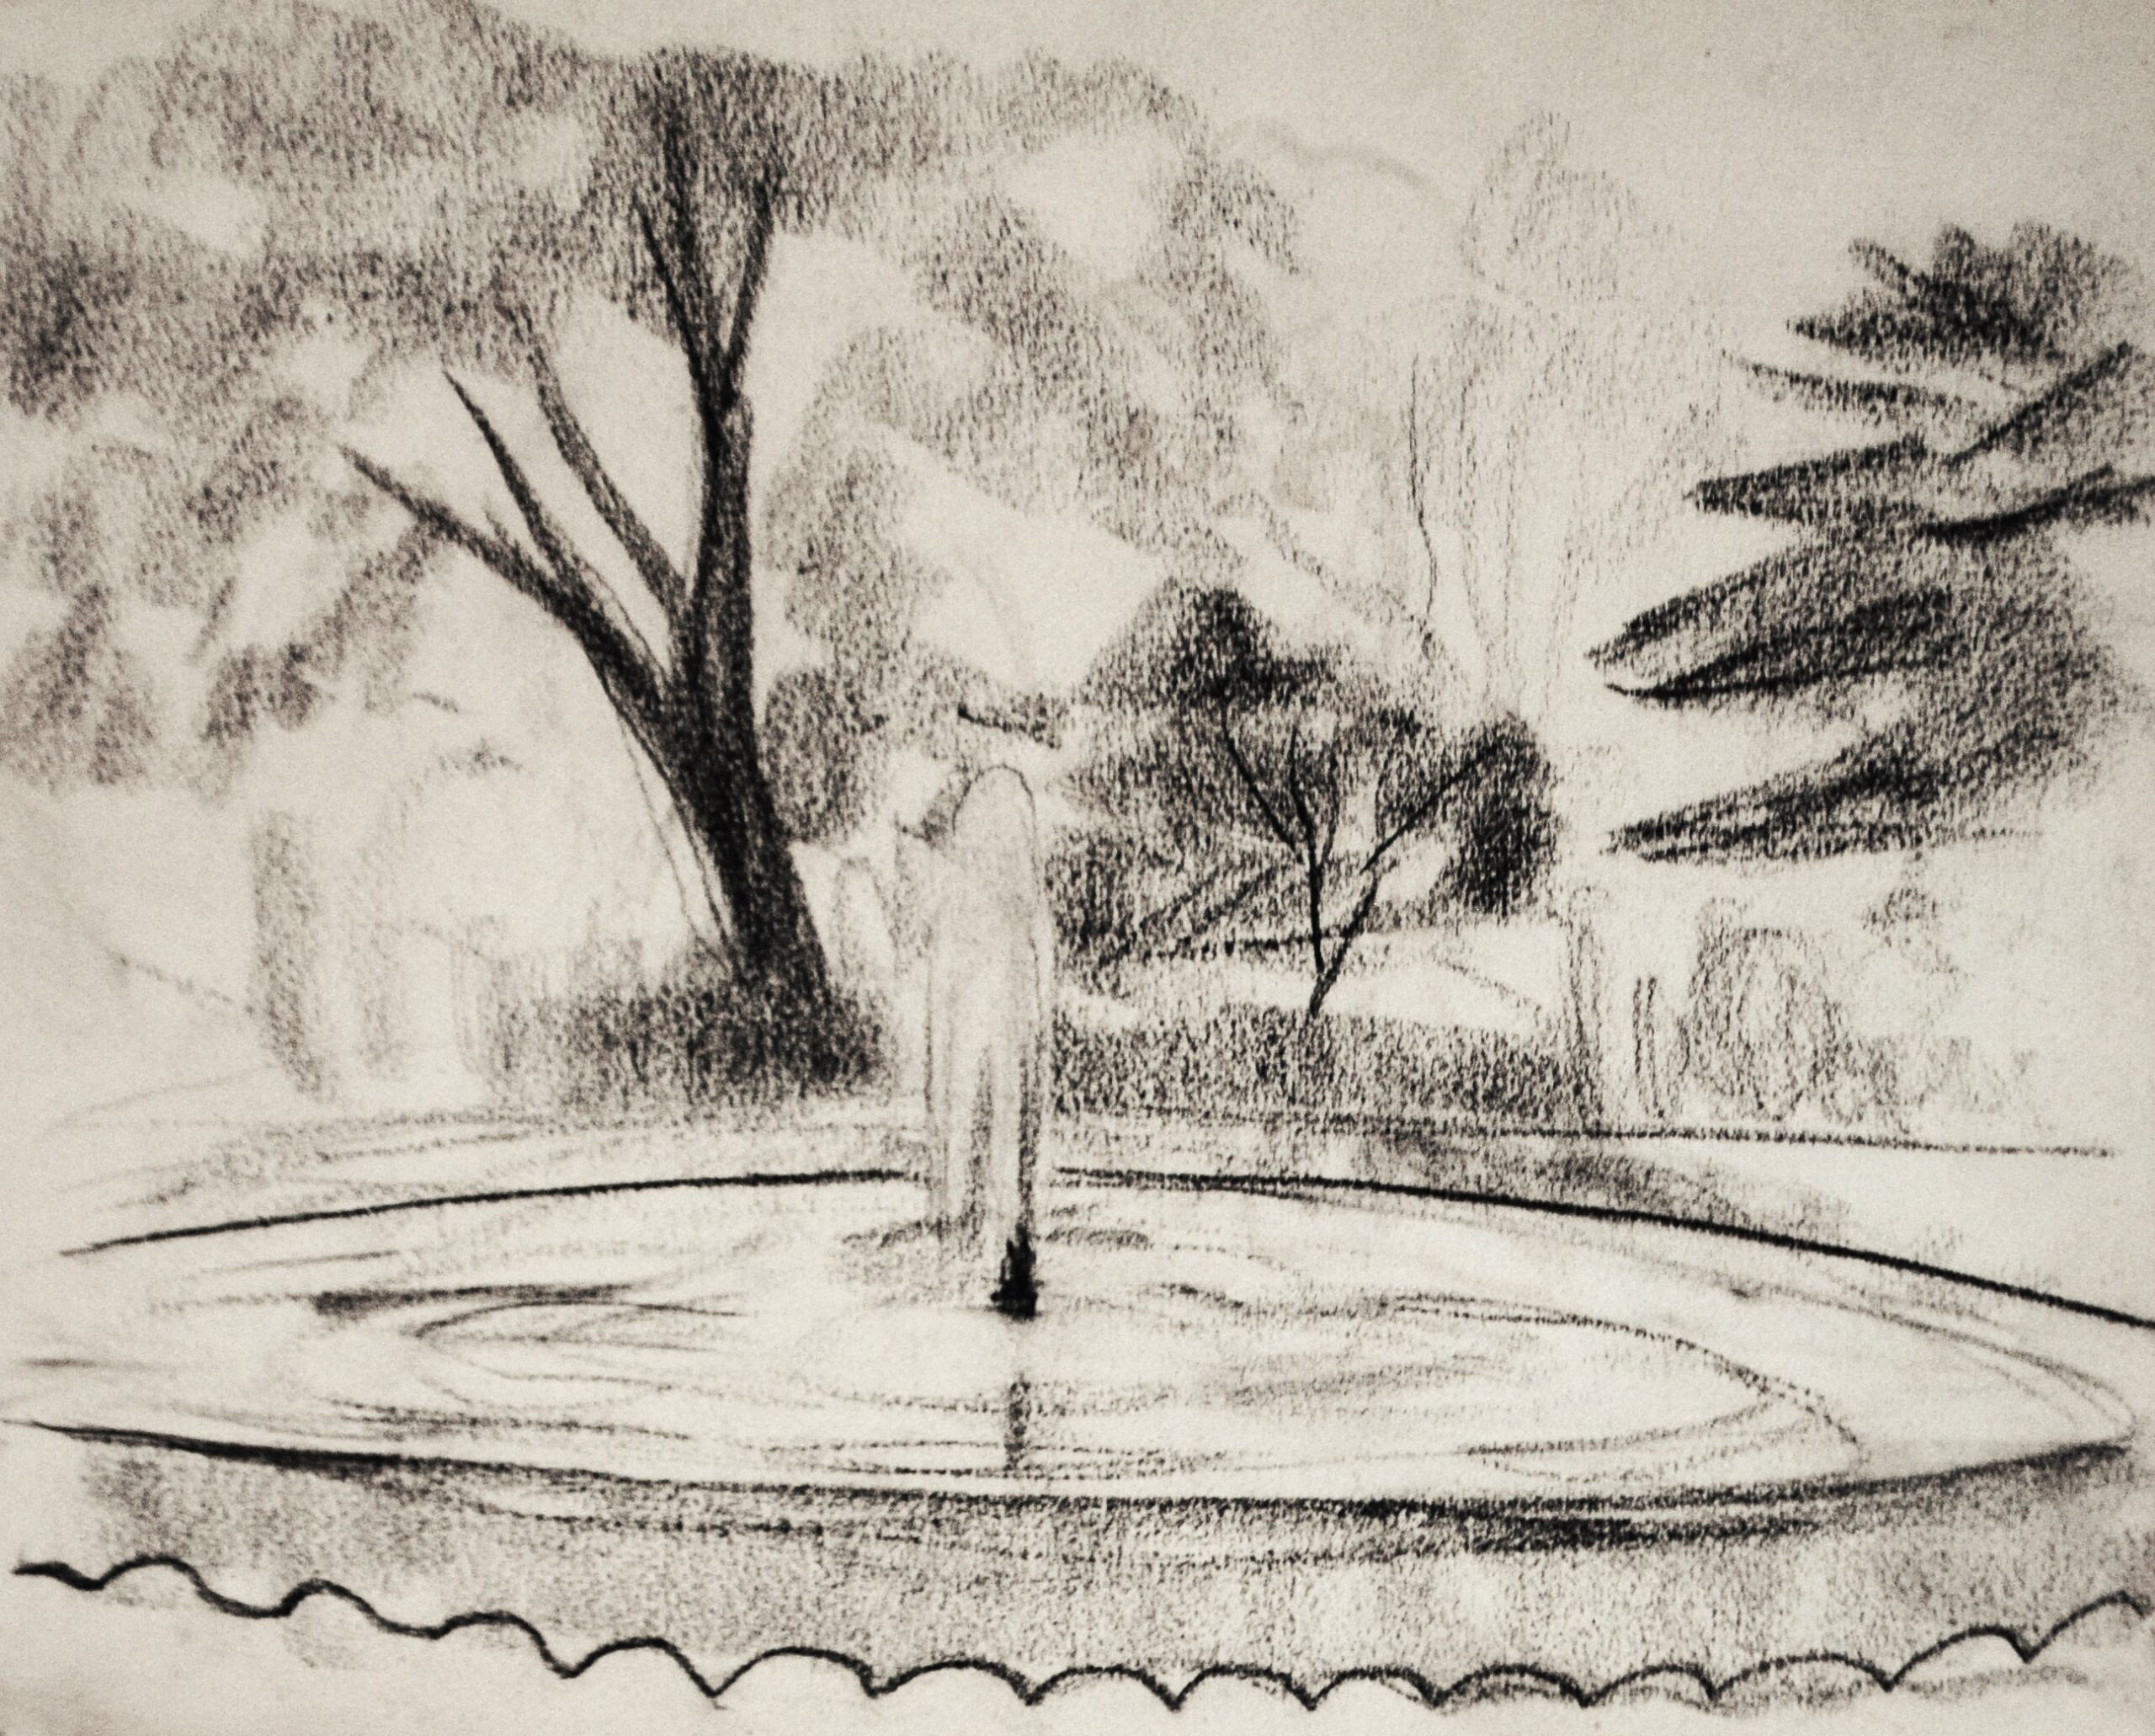 Dibujo de José Manaut titulado Fuente, París, 1923. Carboncillo sobre papel.